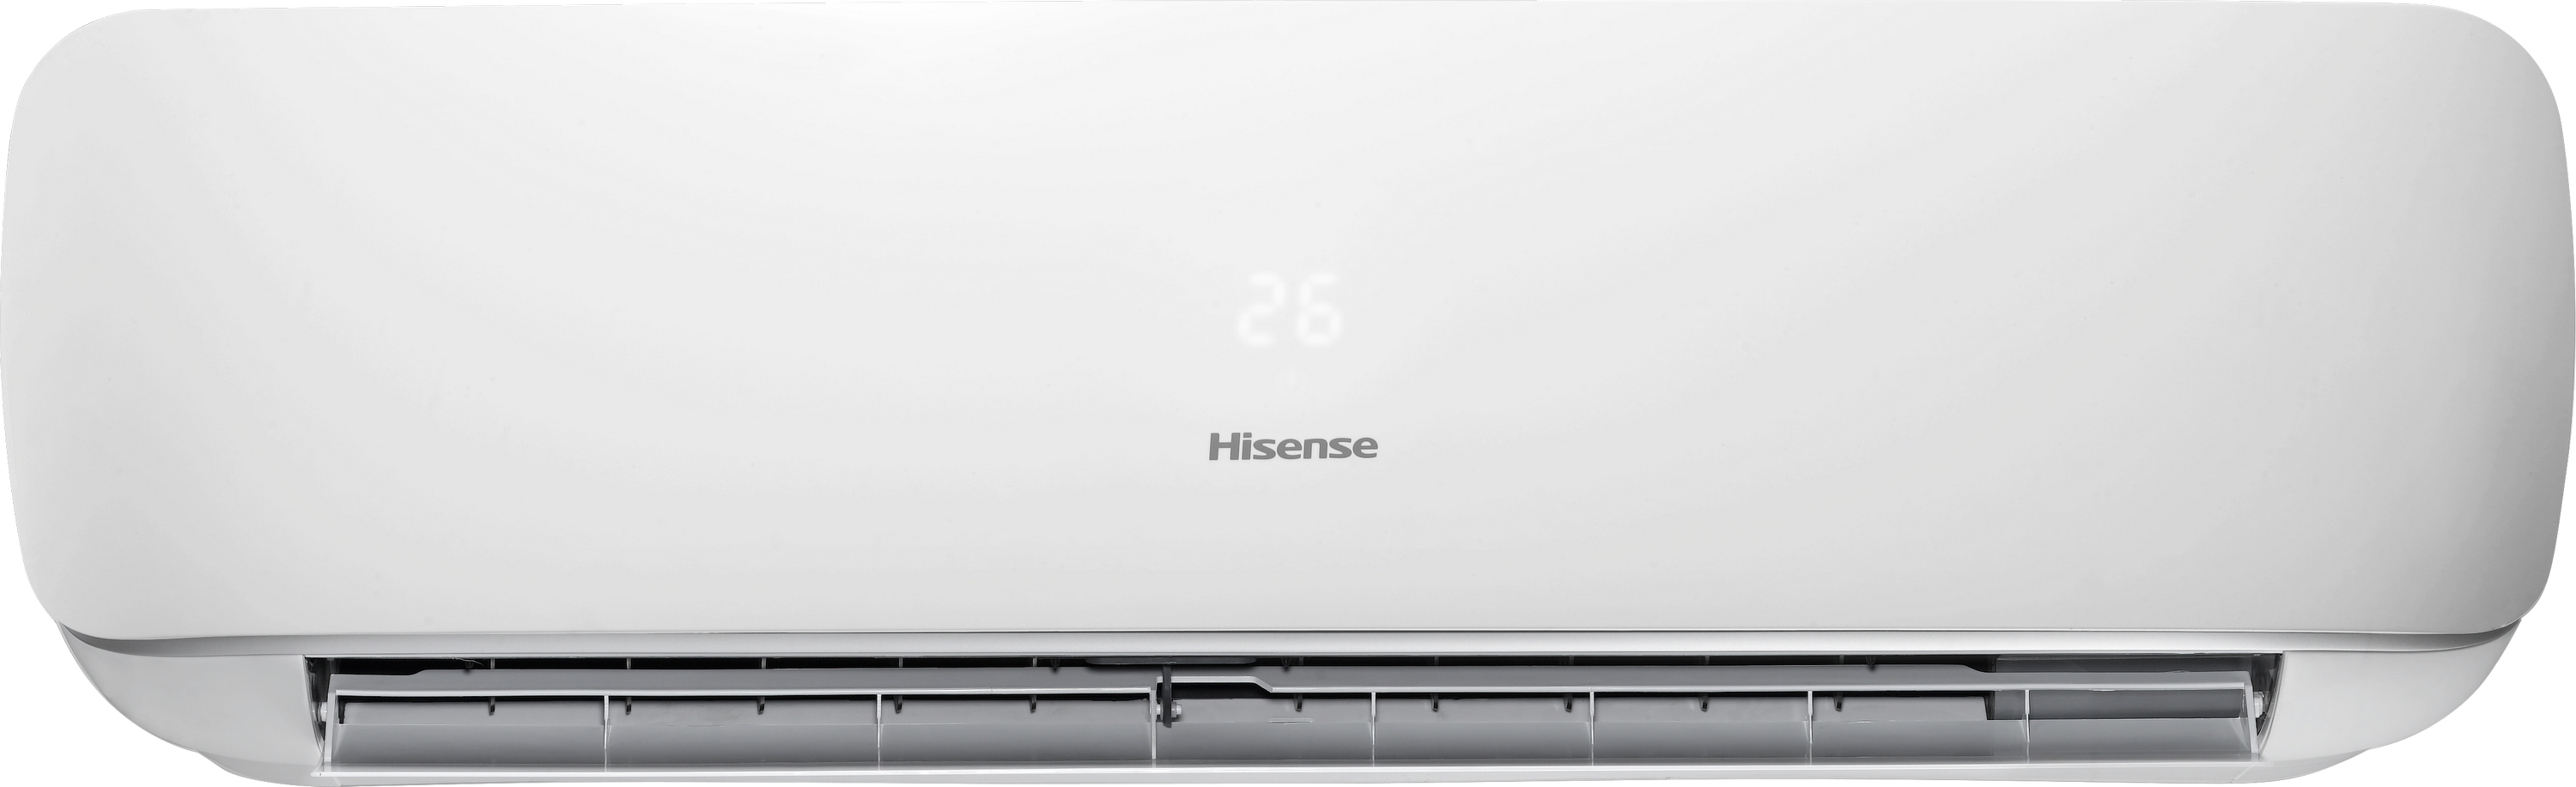 в продаже Кондиционер сплит-система Hisense Apple Pie R32 TG70BB0B - фото 3